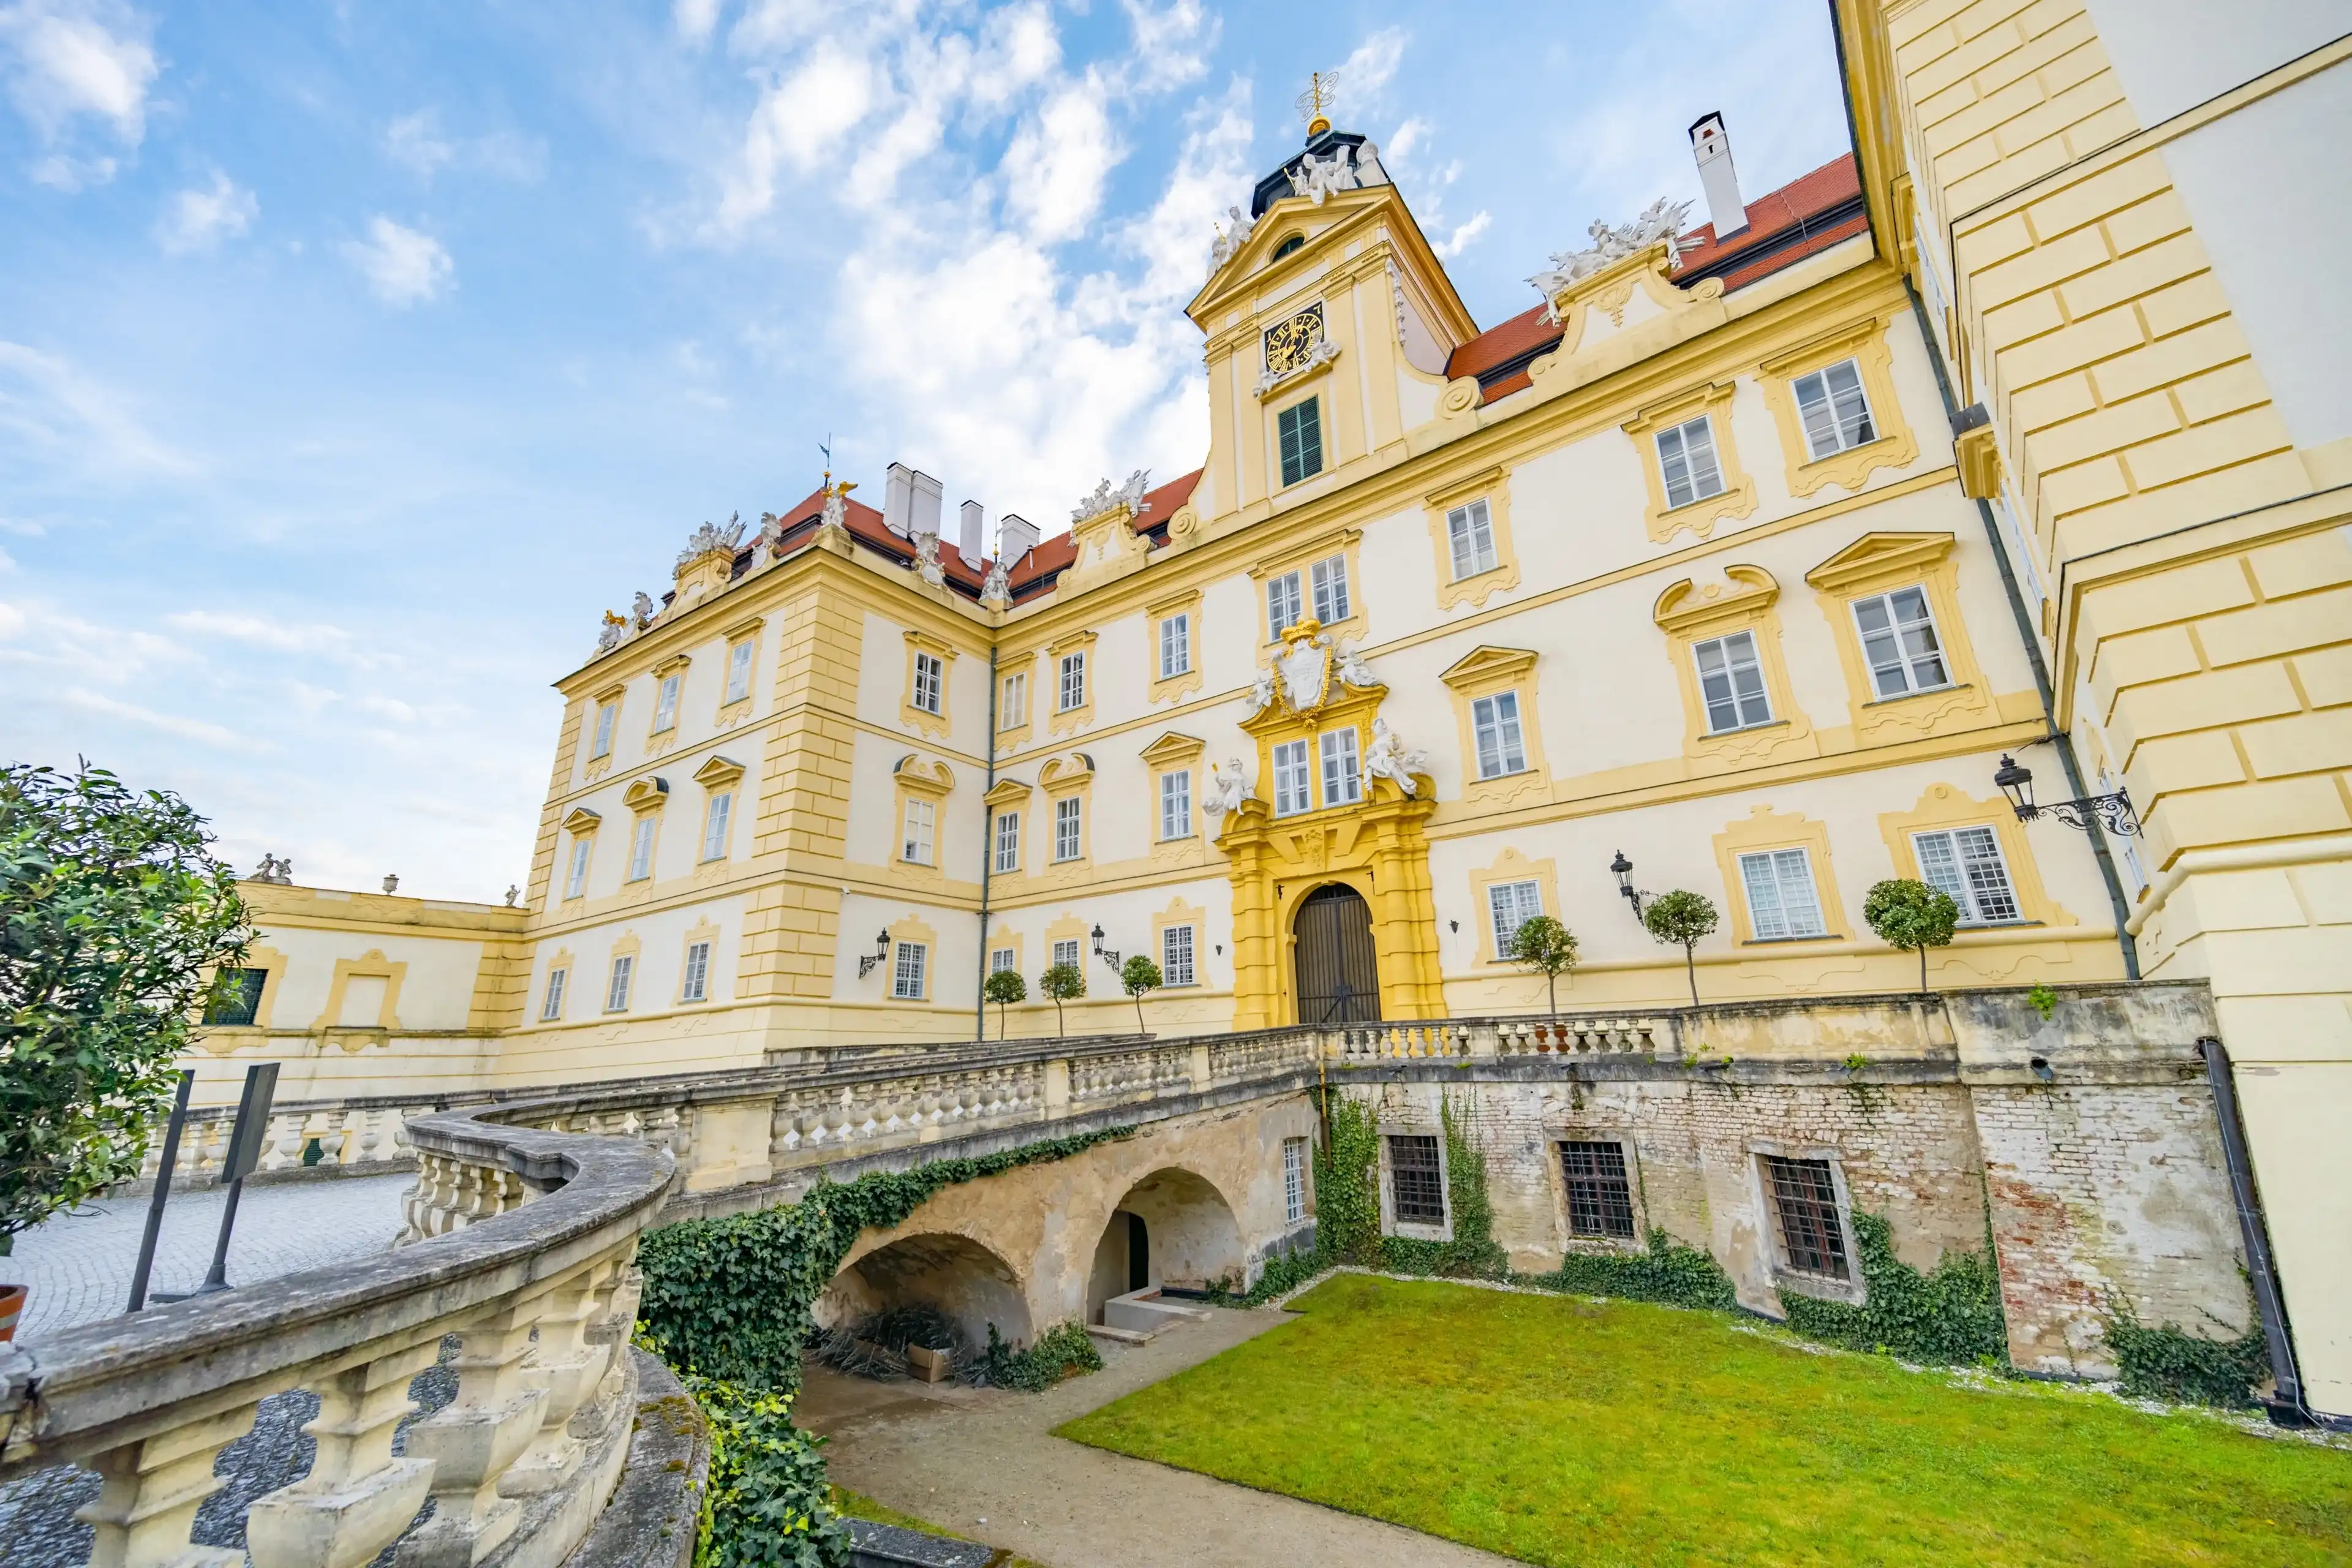 South Moravian hotels. Best hotels in South Moravian, Czech Republic